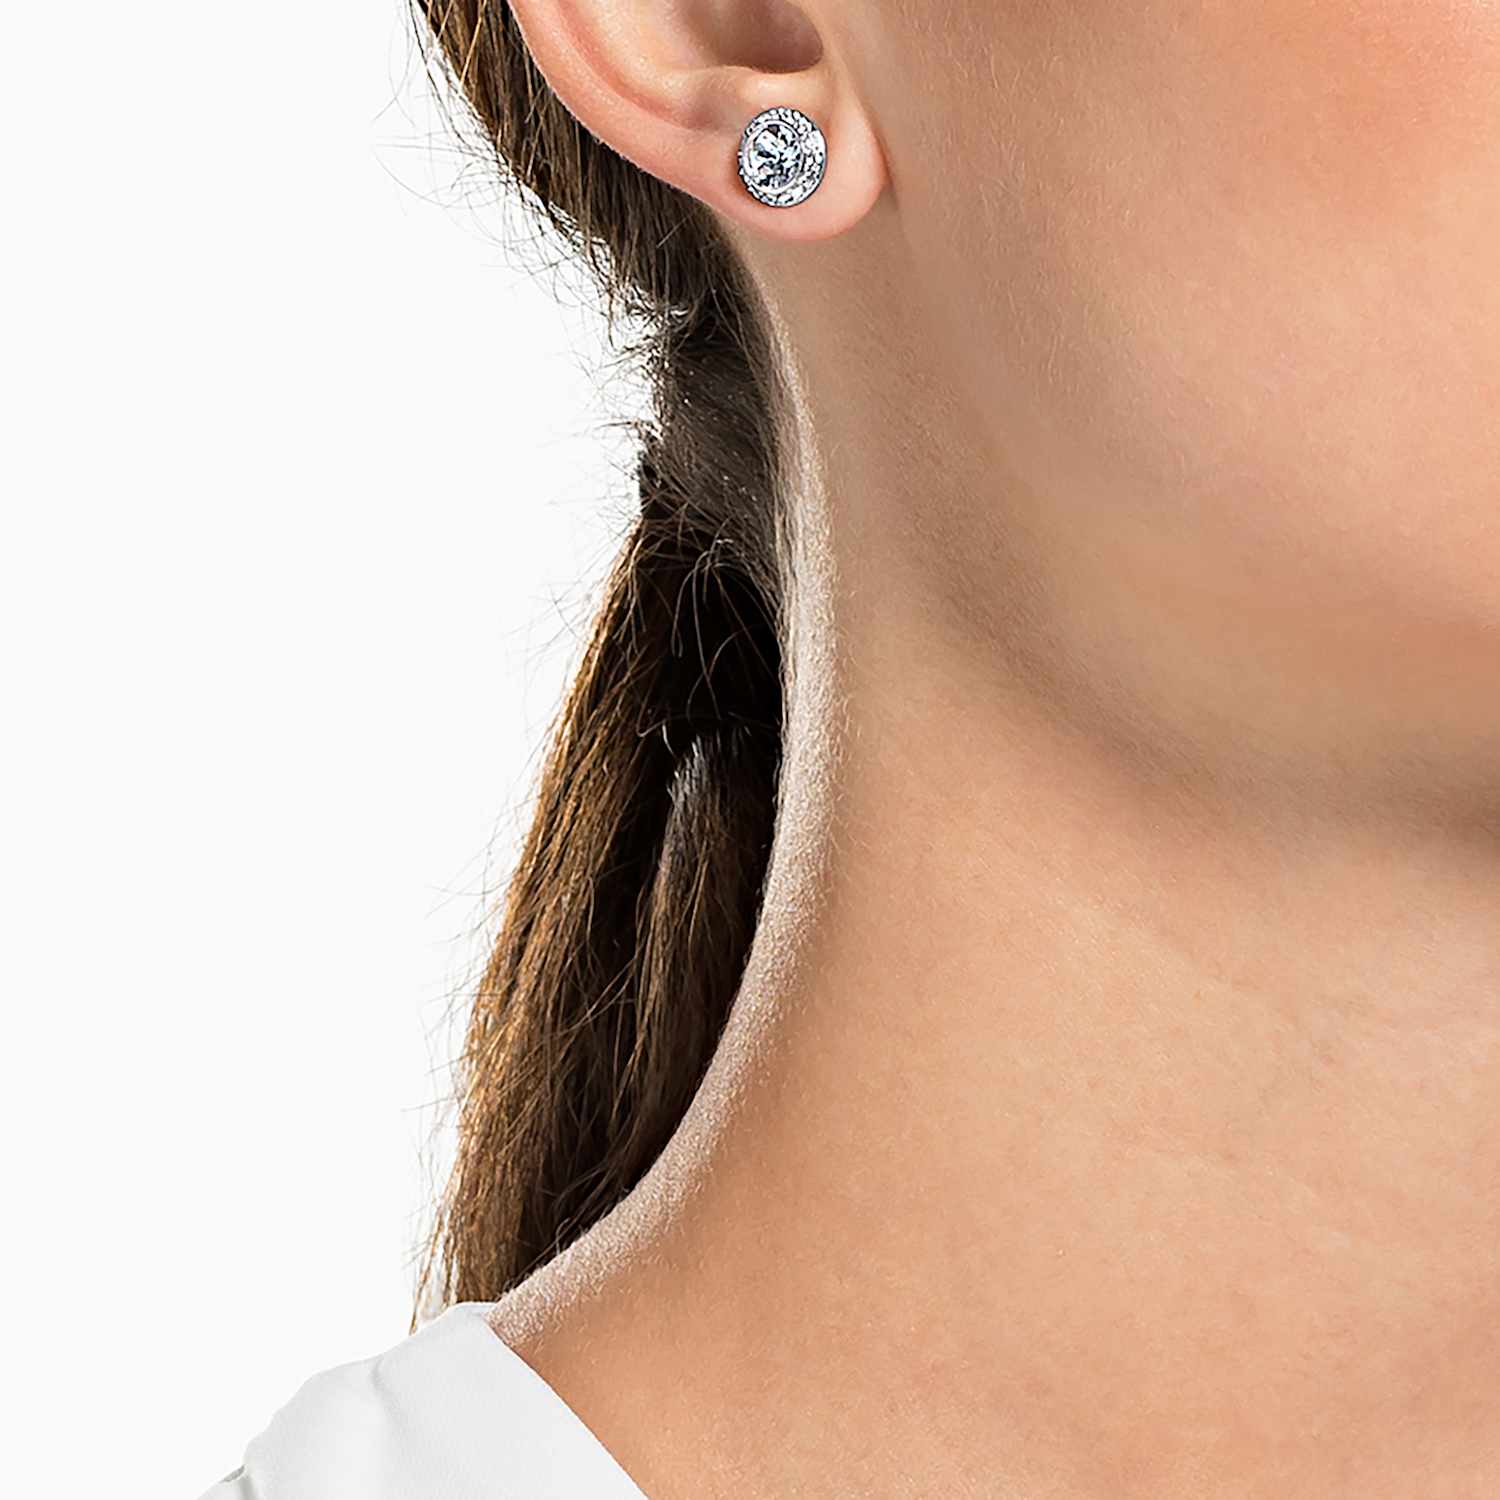 ritme Verklaring door elkaar haspelen Angelic stud earrings, Round cut crystal, White, Rhodium plated | Swarovski .com